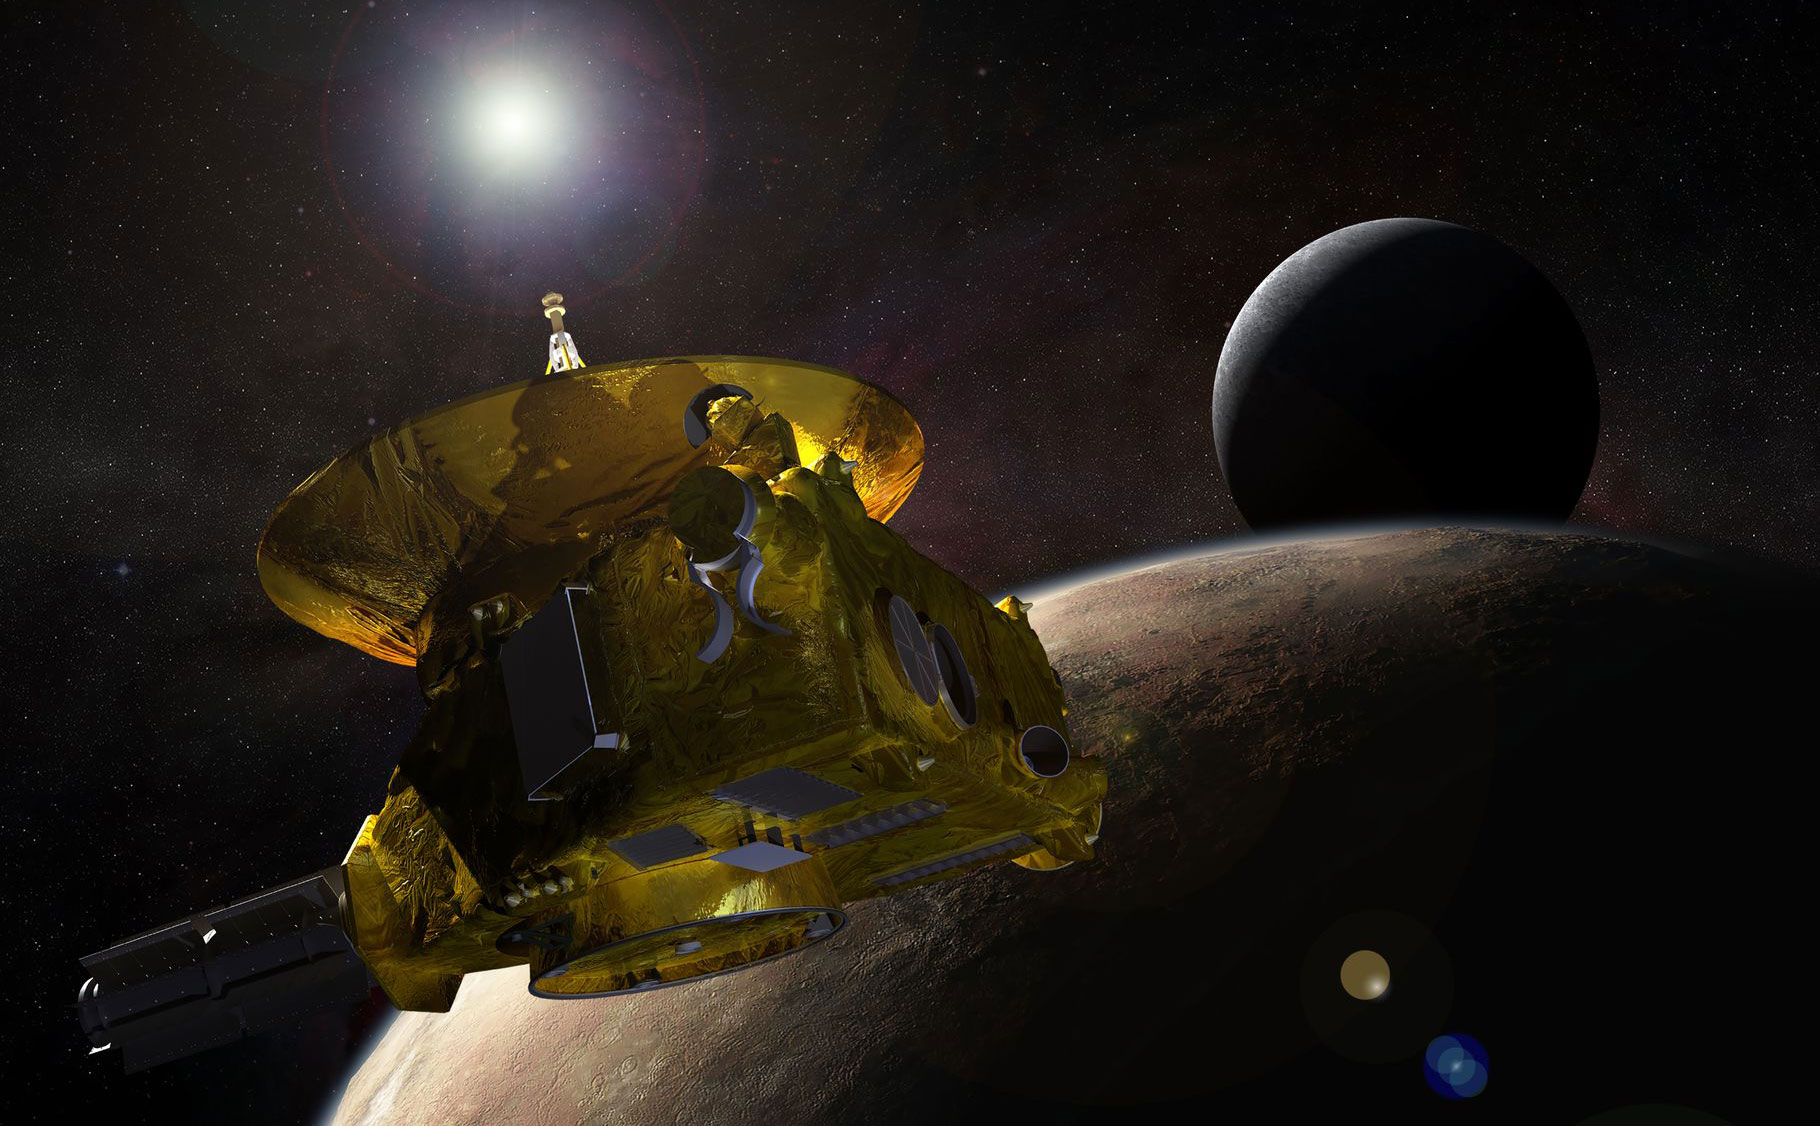 Cùng xem tàu vũ trụ New Horizons của NASA thám hiểm vật thể xa nhất mà nhân loại từng tiếp cận